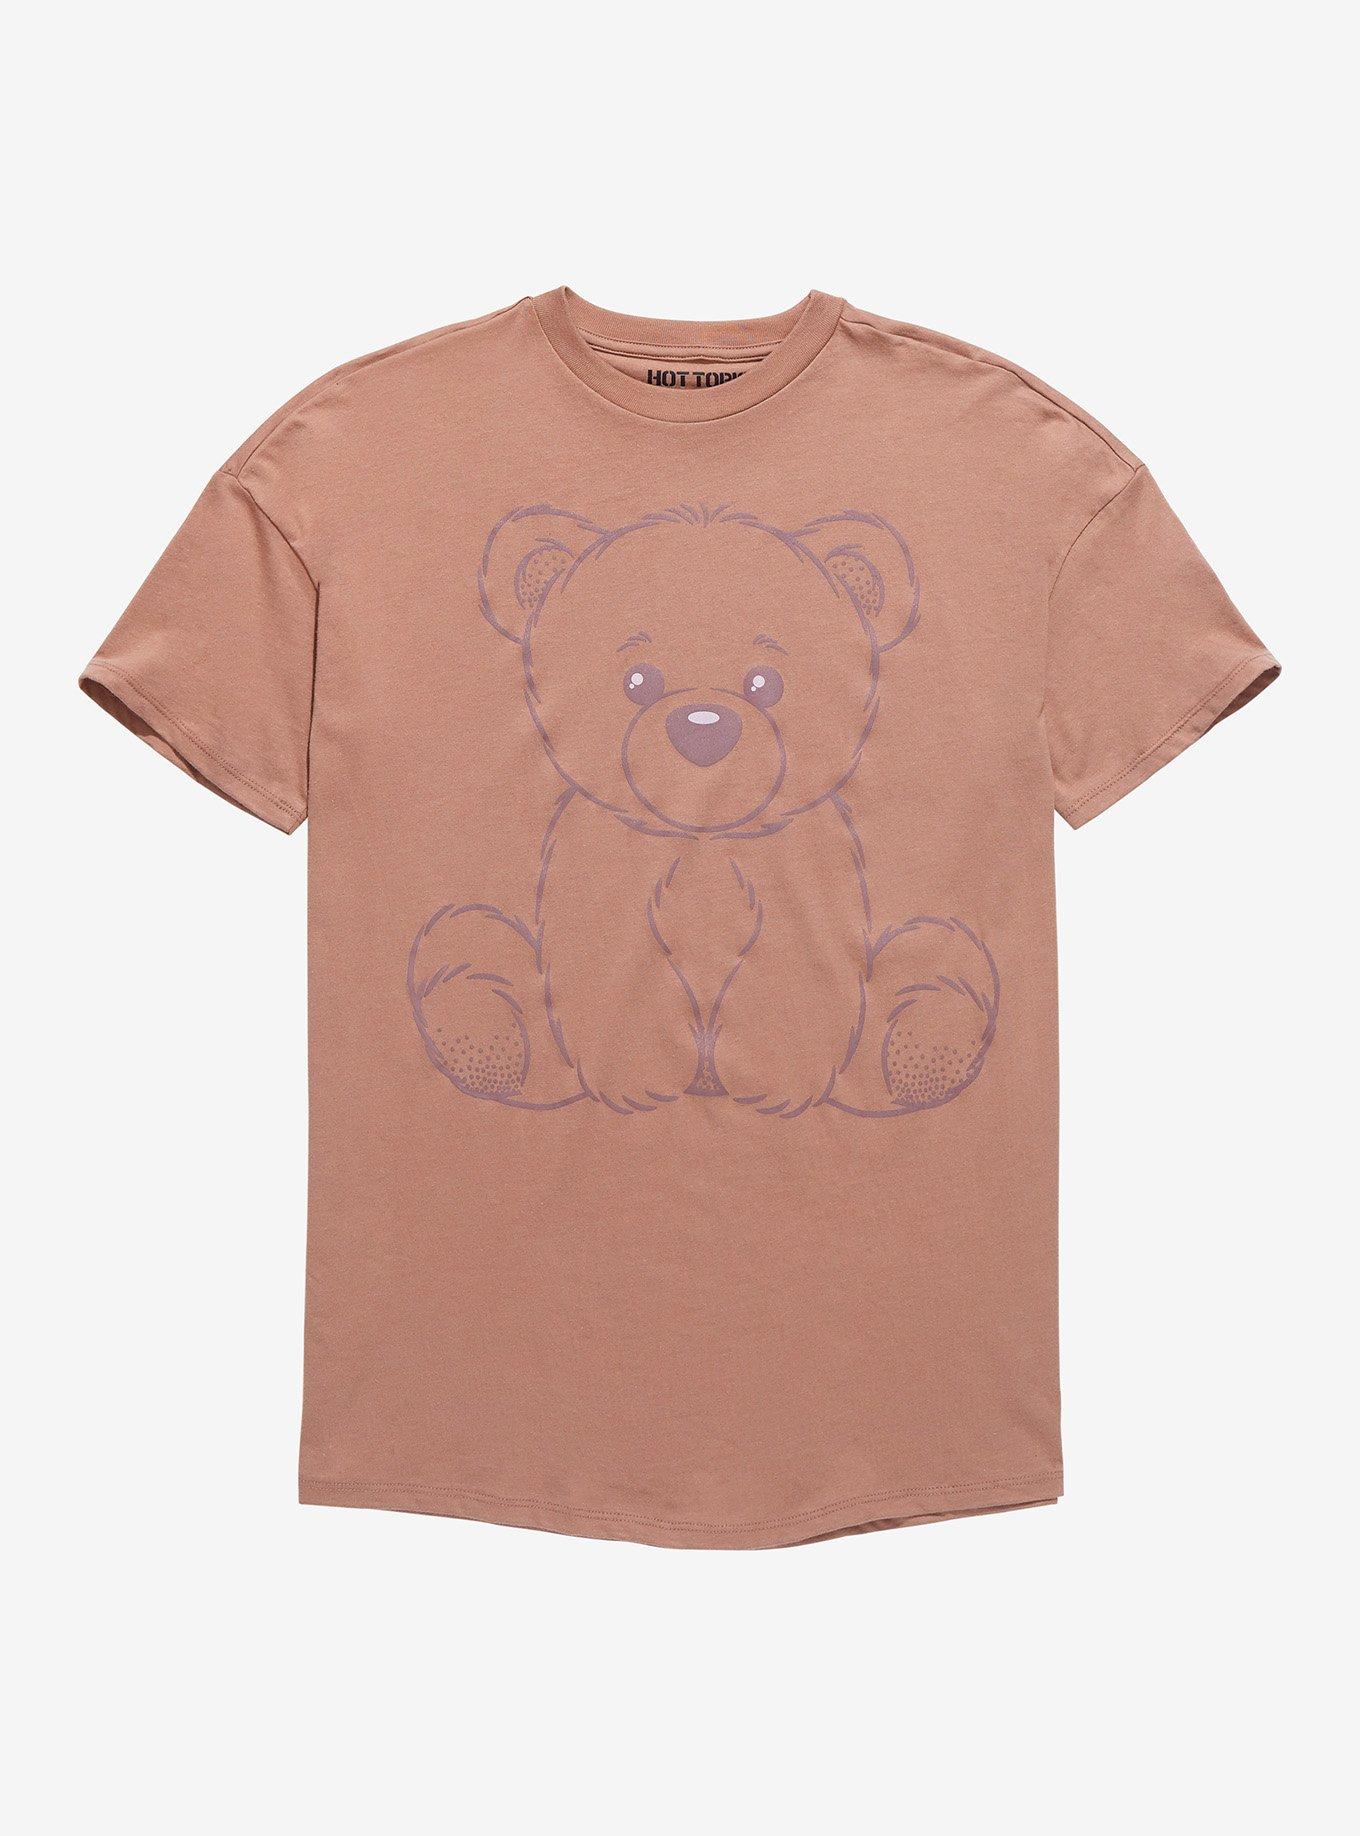 Brown Teddy Bear Boyfriend Fit Girls T-Shirt, MULTI, hi-res